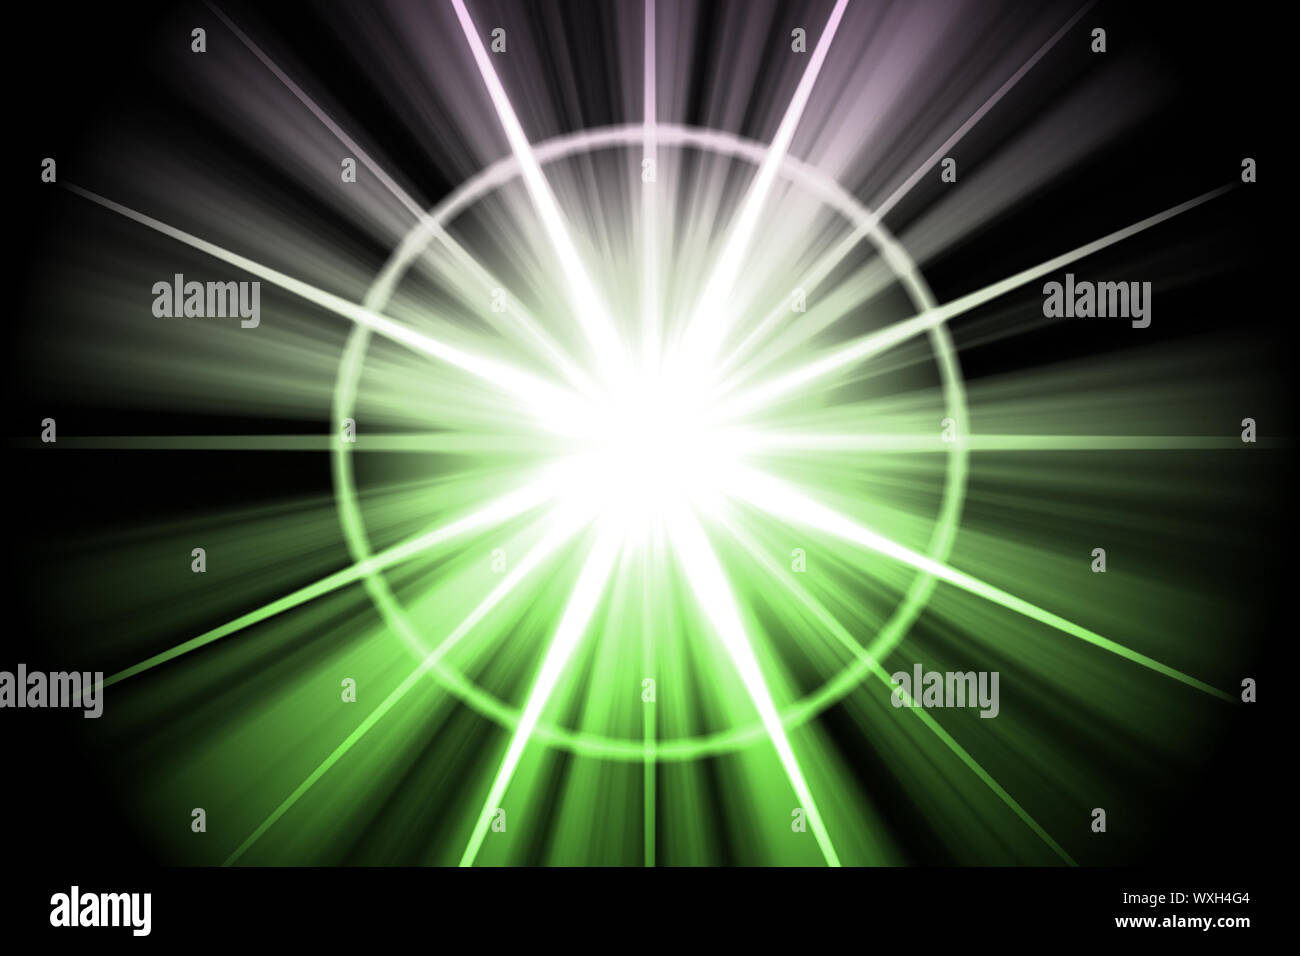 Green Star Sunburst Abstract Stock Photo